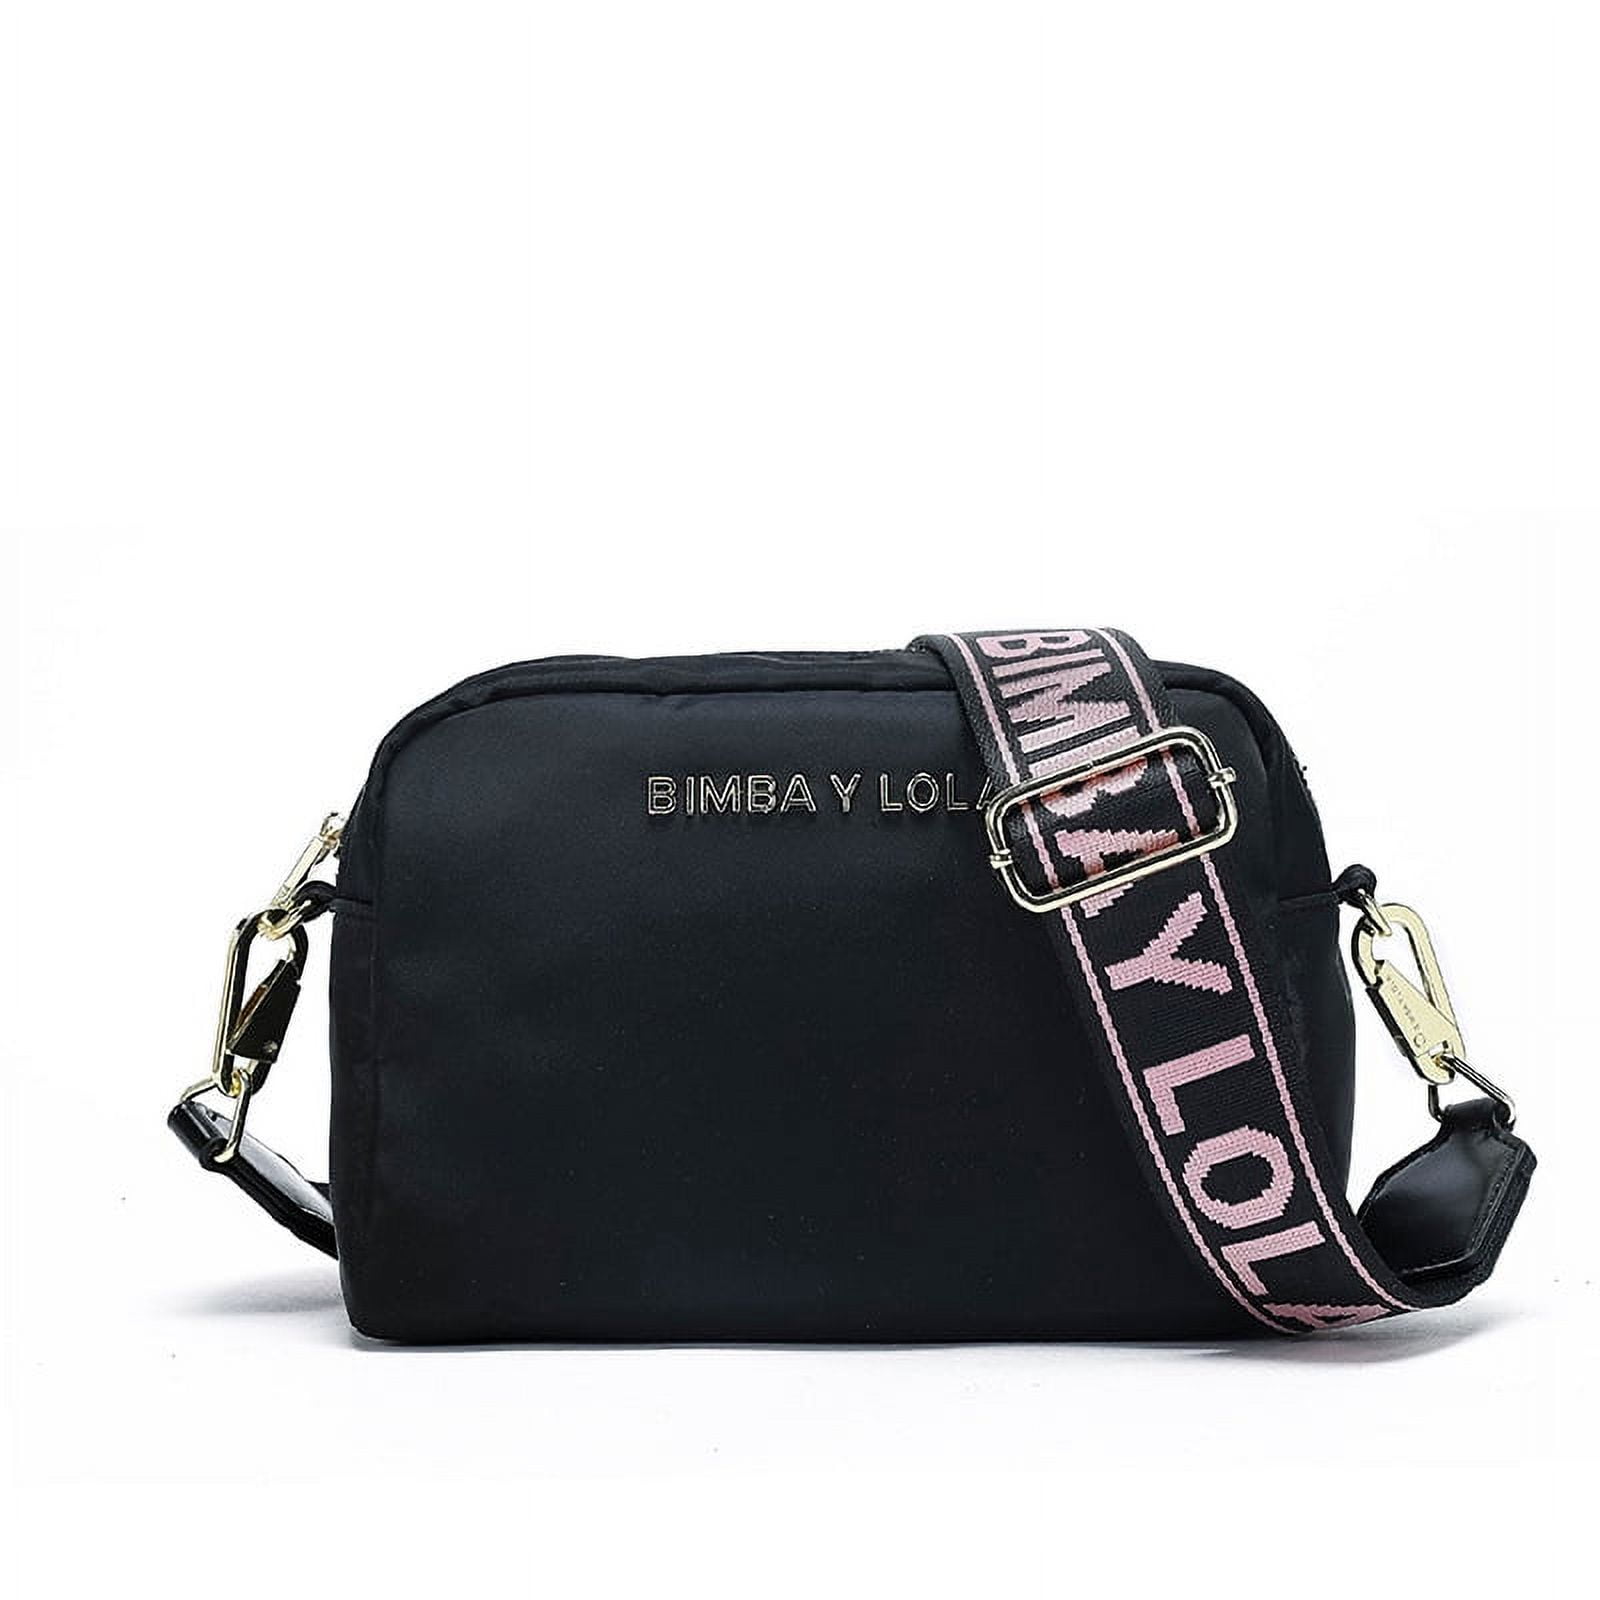 BIMBA Y LOLA, Black Women's Handbag